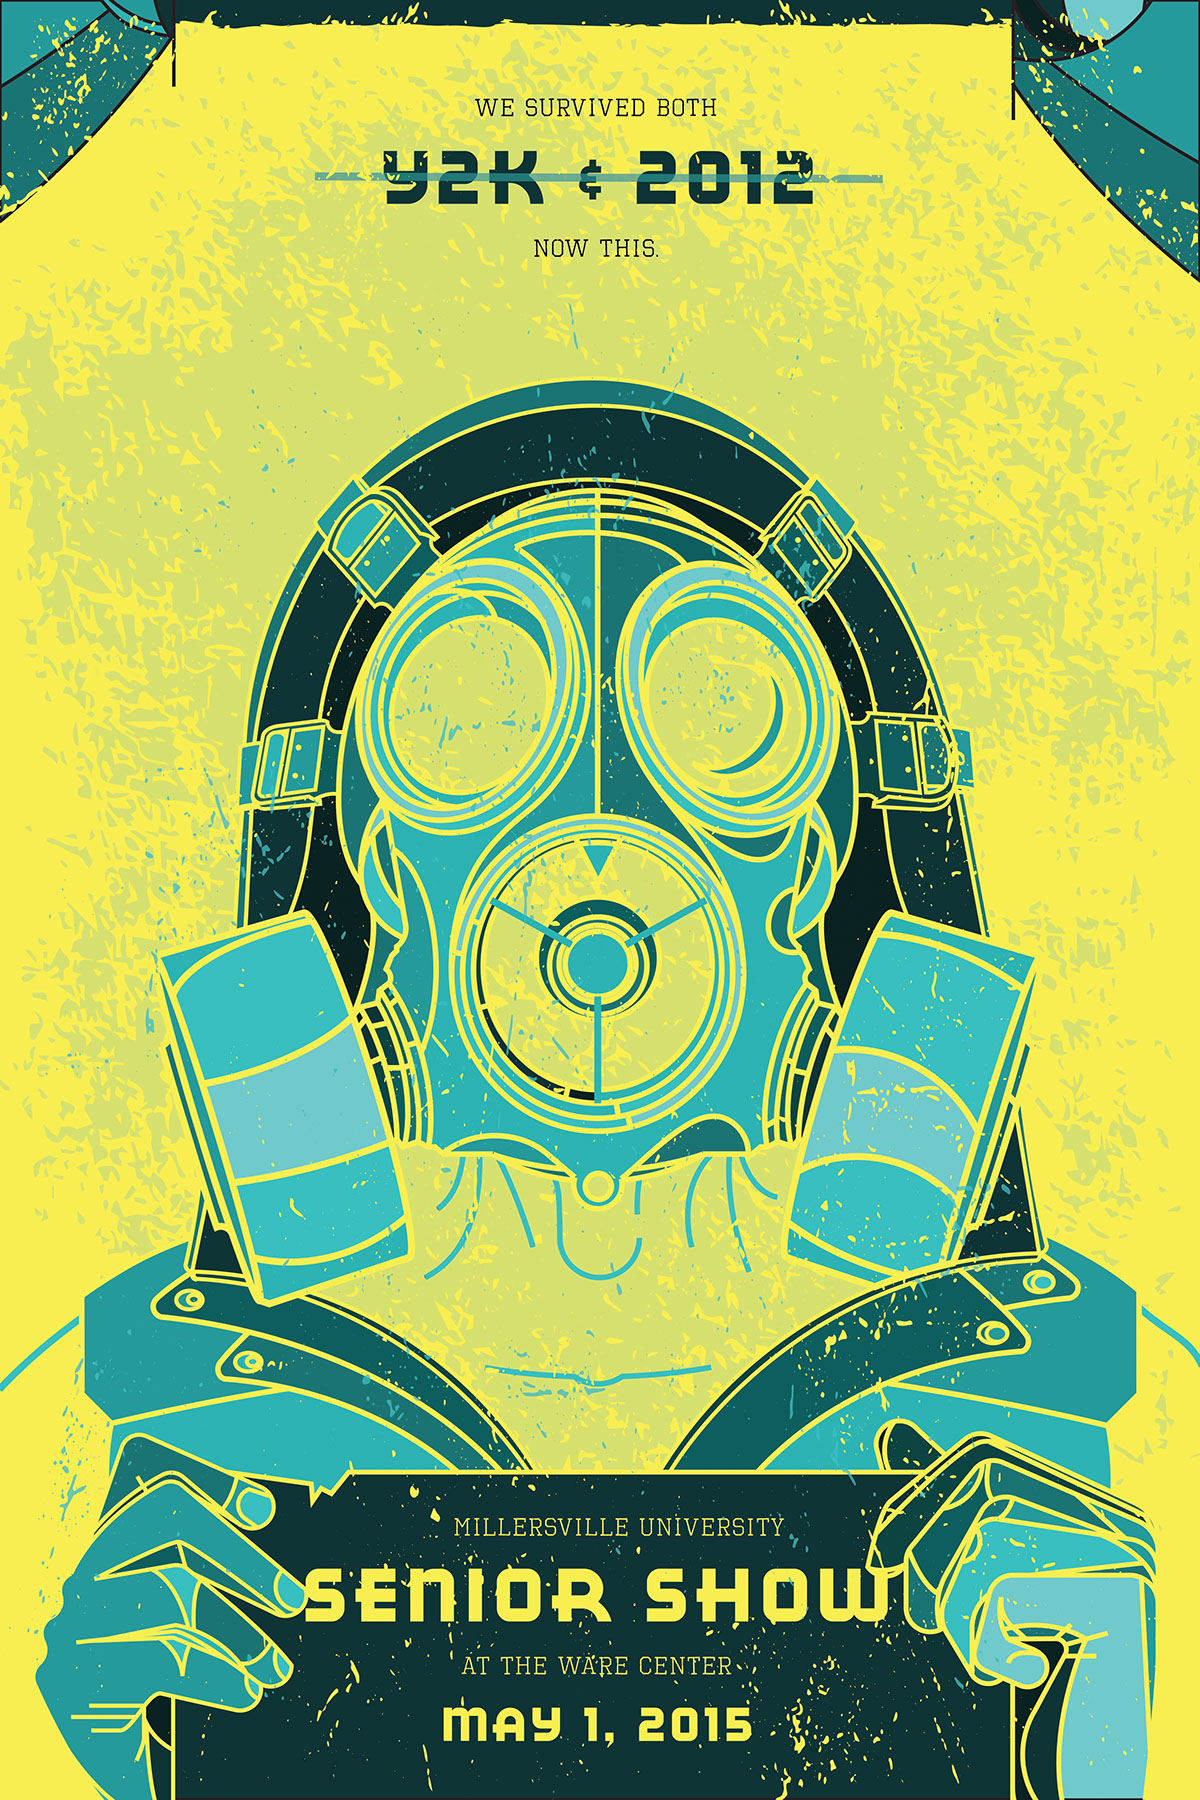 apocalypse post-apocalypse fall out radiation nuclear gas mask survivor poster Senior Show Senior Exhibition Theme